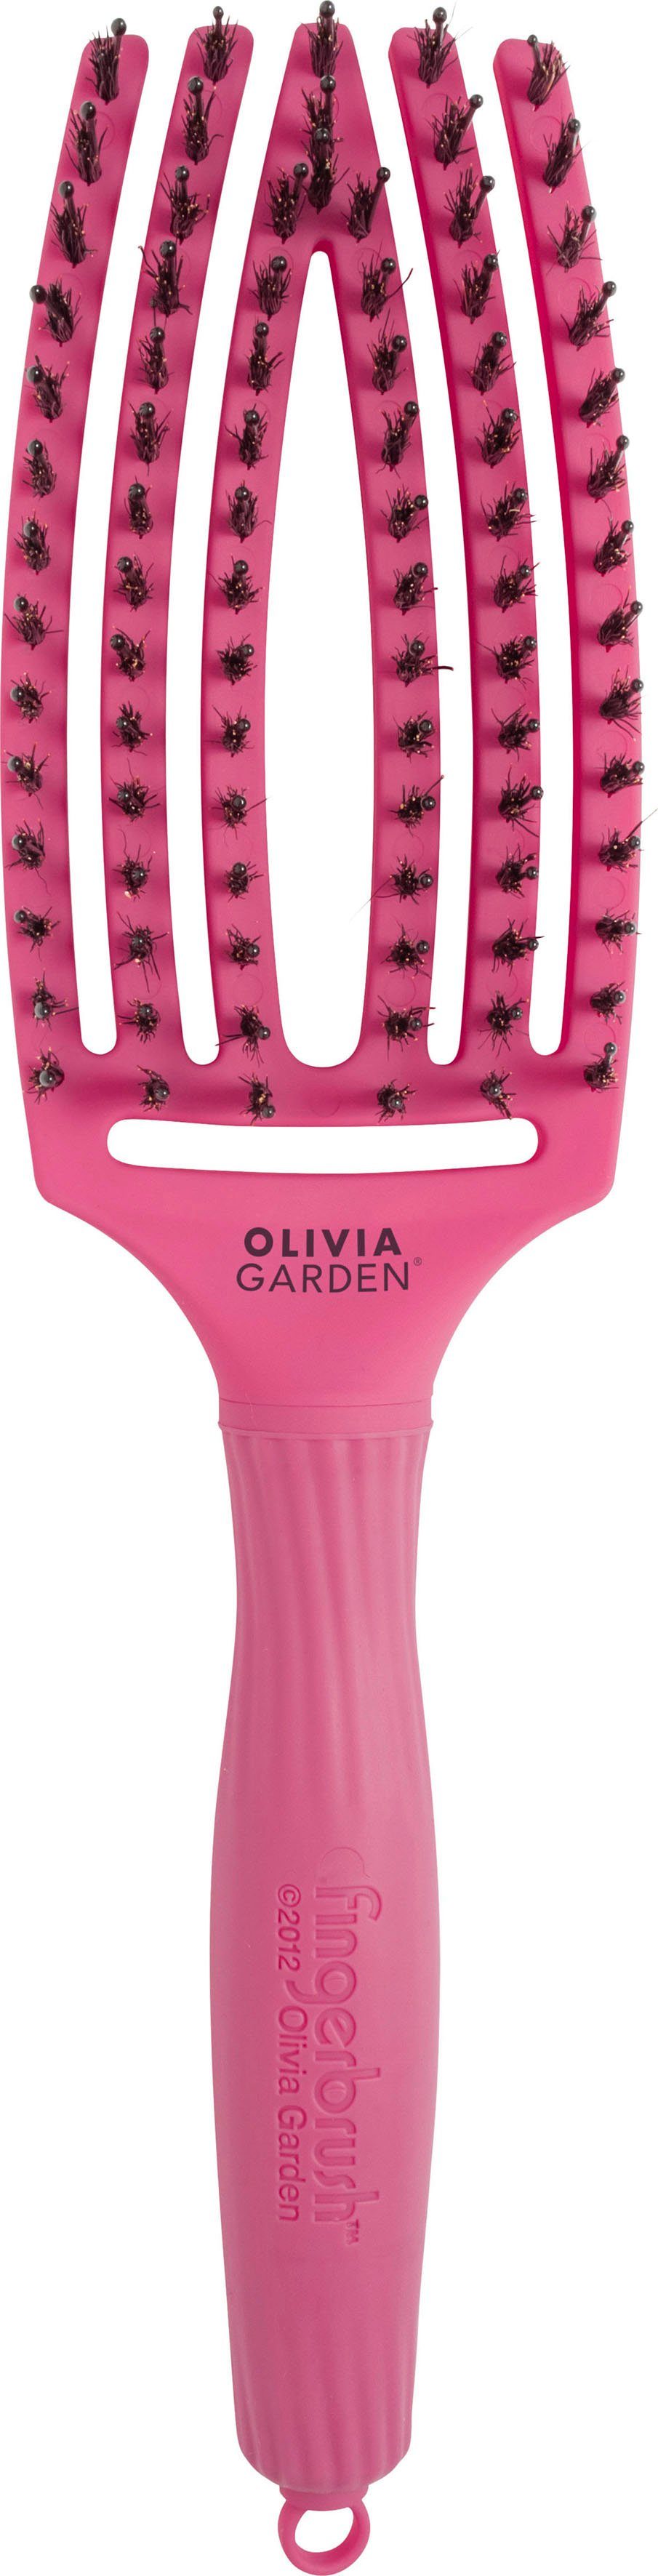 OLIVIA GARDEN Haarbürste Fingerbrush Medium Combo pink